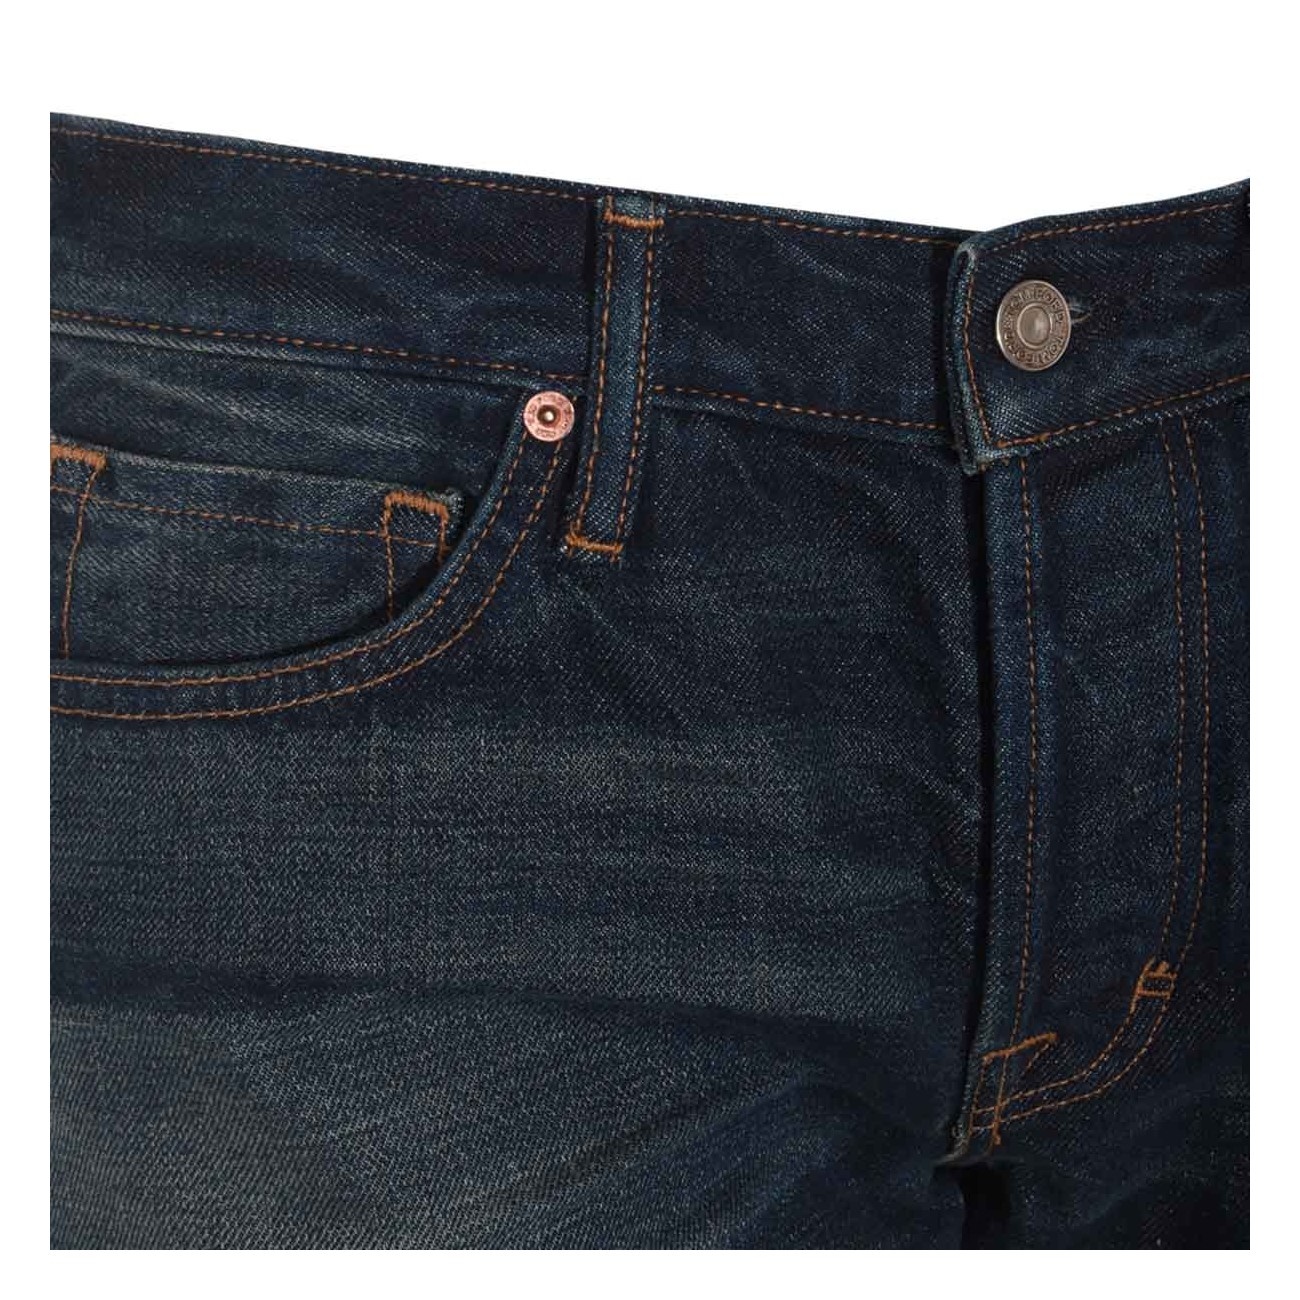 blue cotton denim jeans - 3